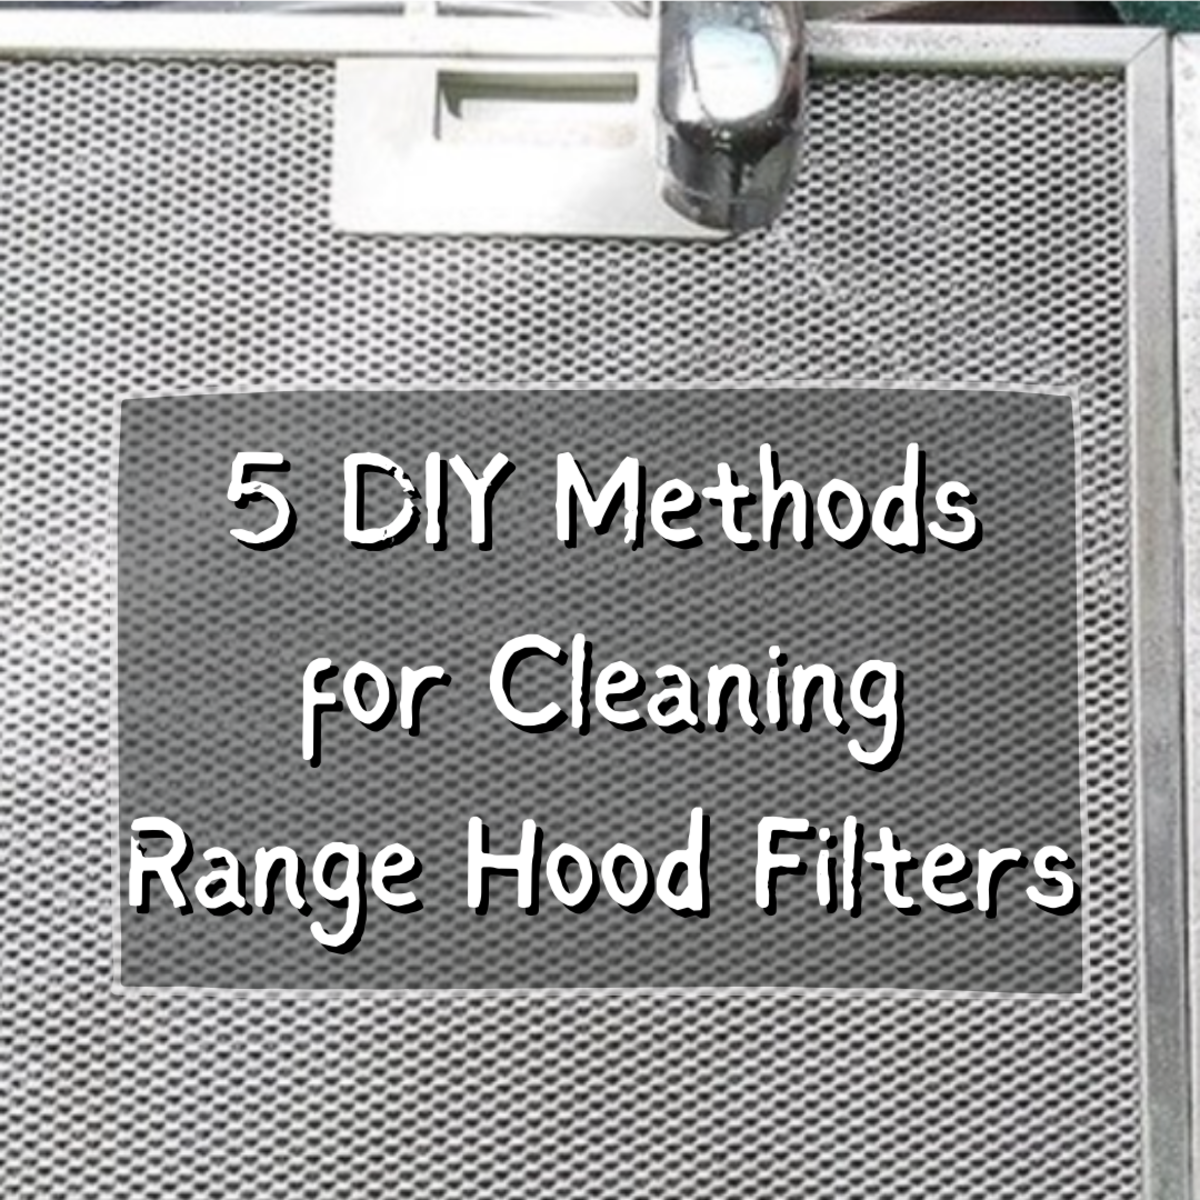 How to Clean Range Hood Mesh Filters: 5 DIY Methods